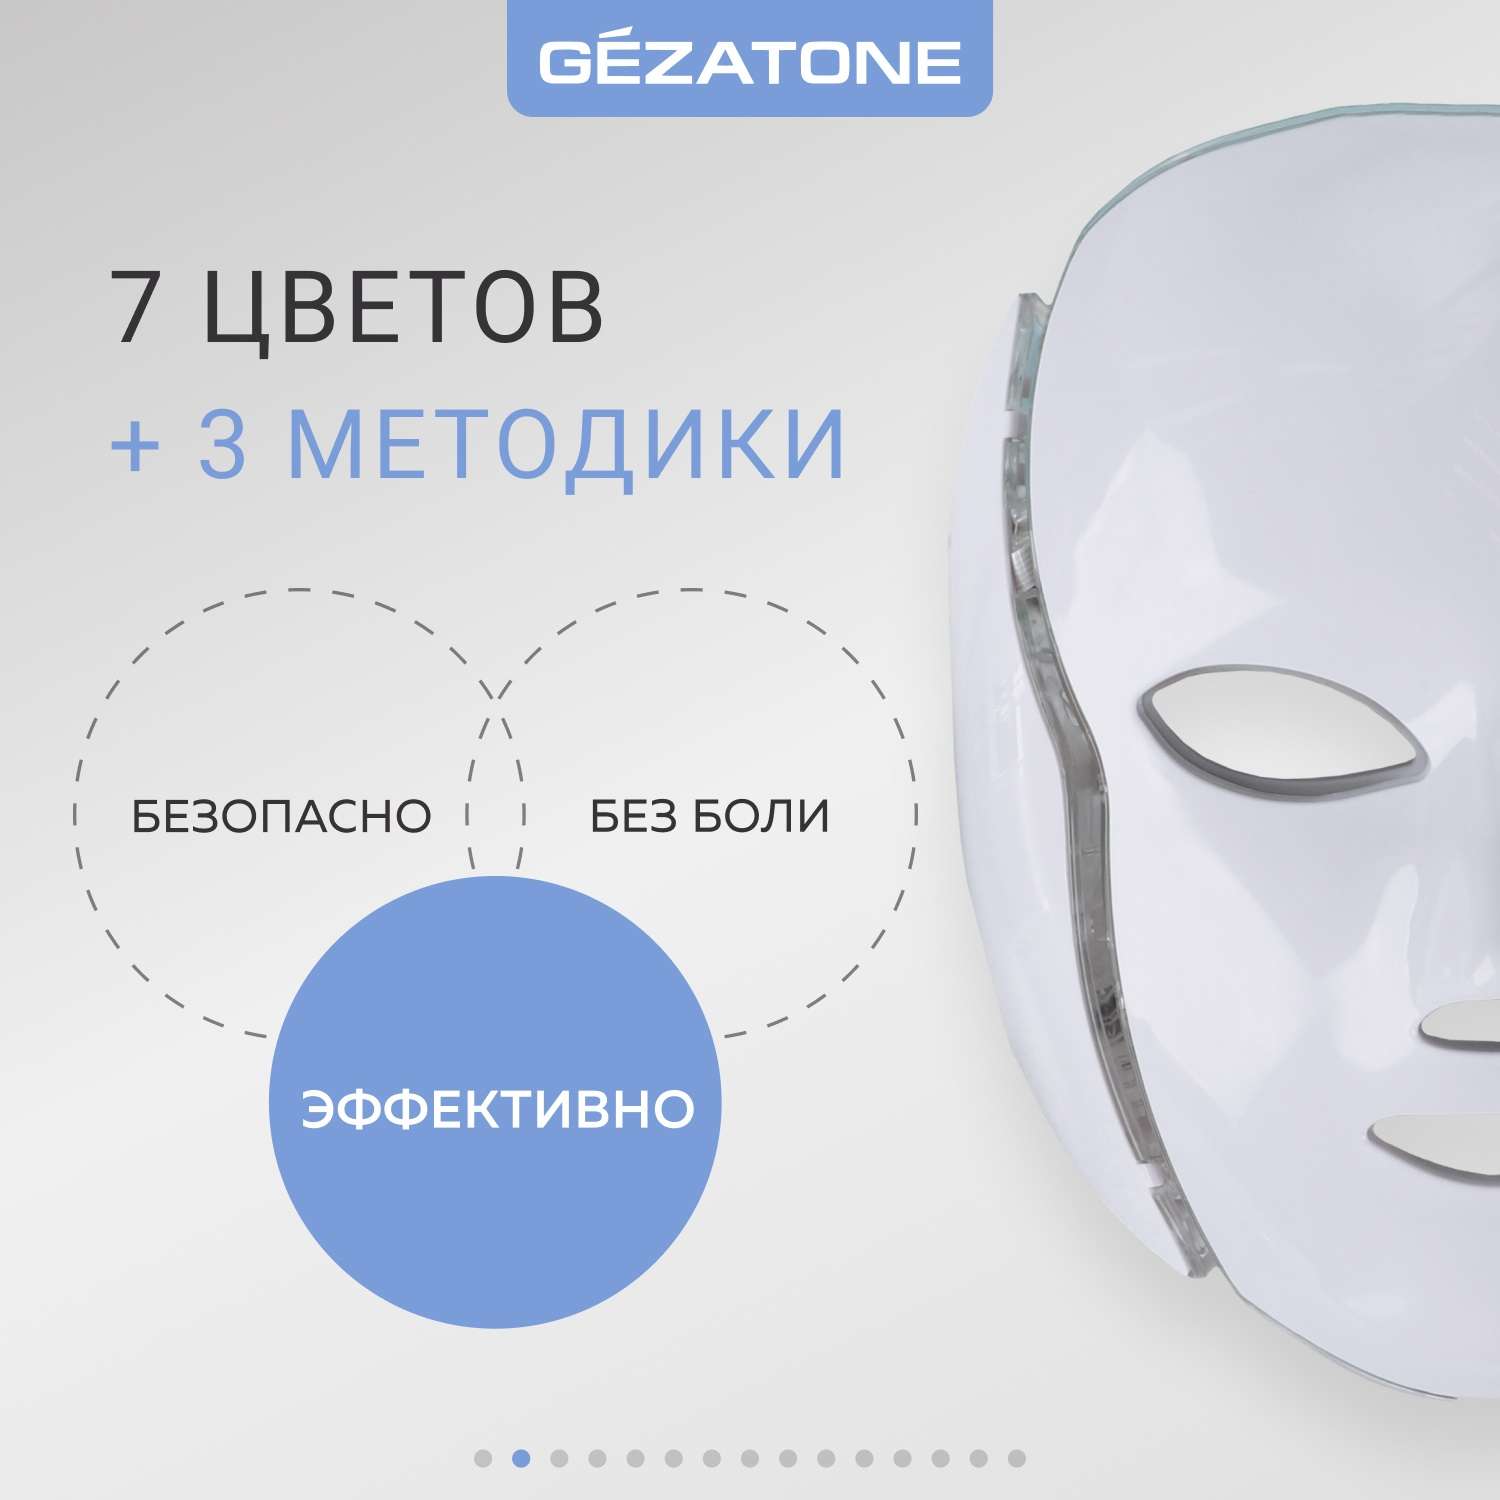 Светодиодная маска Gezatone для омоложения кожи лица m1090 - фото 2